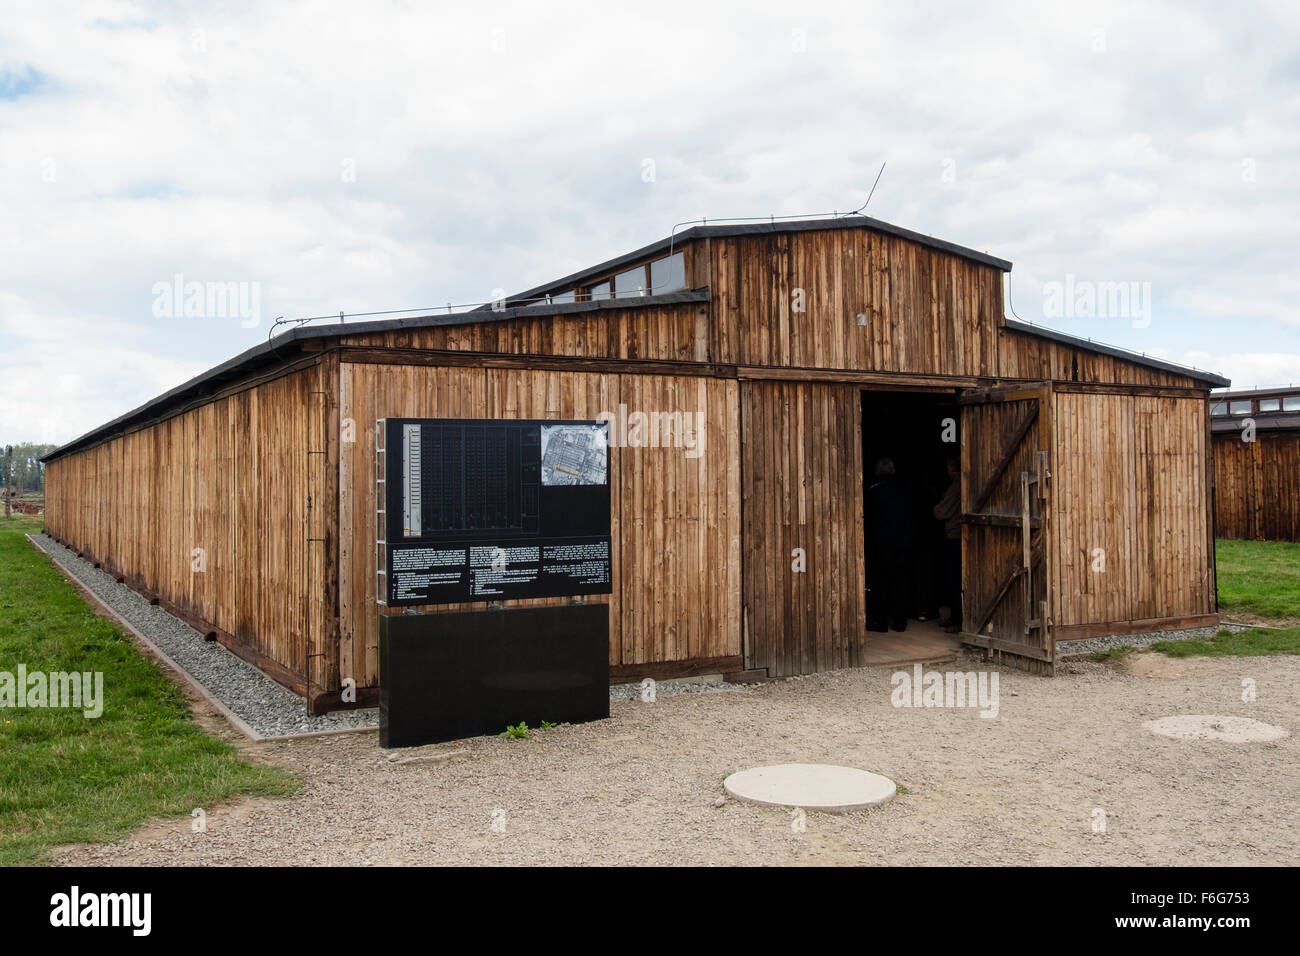 Reconstruit baraques en bois pour les prisonniers à Auschwitz II-Birkenau allemand nazi de concentration et d'Extermination Camp. Oswiecim en Pologne Banque D'Images